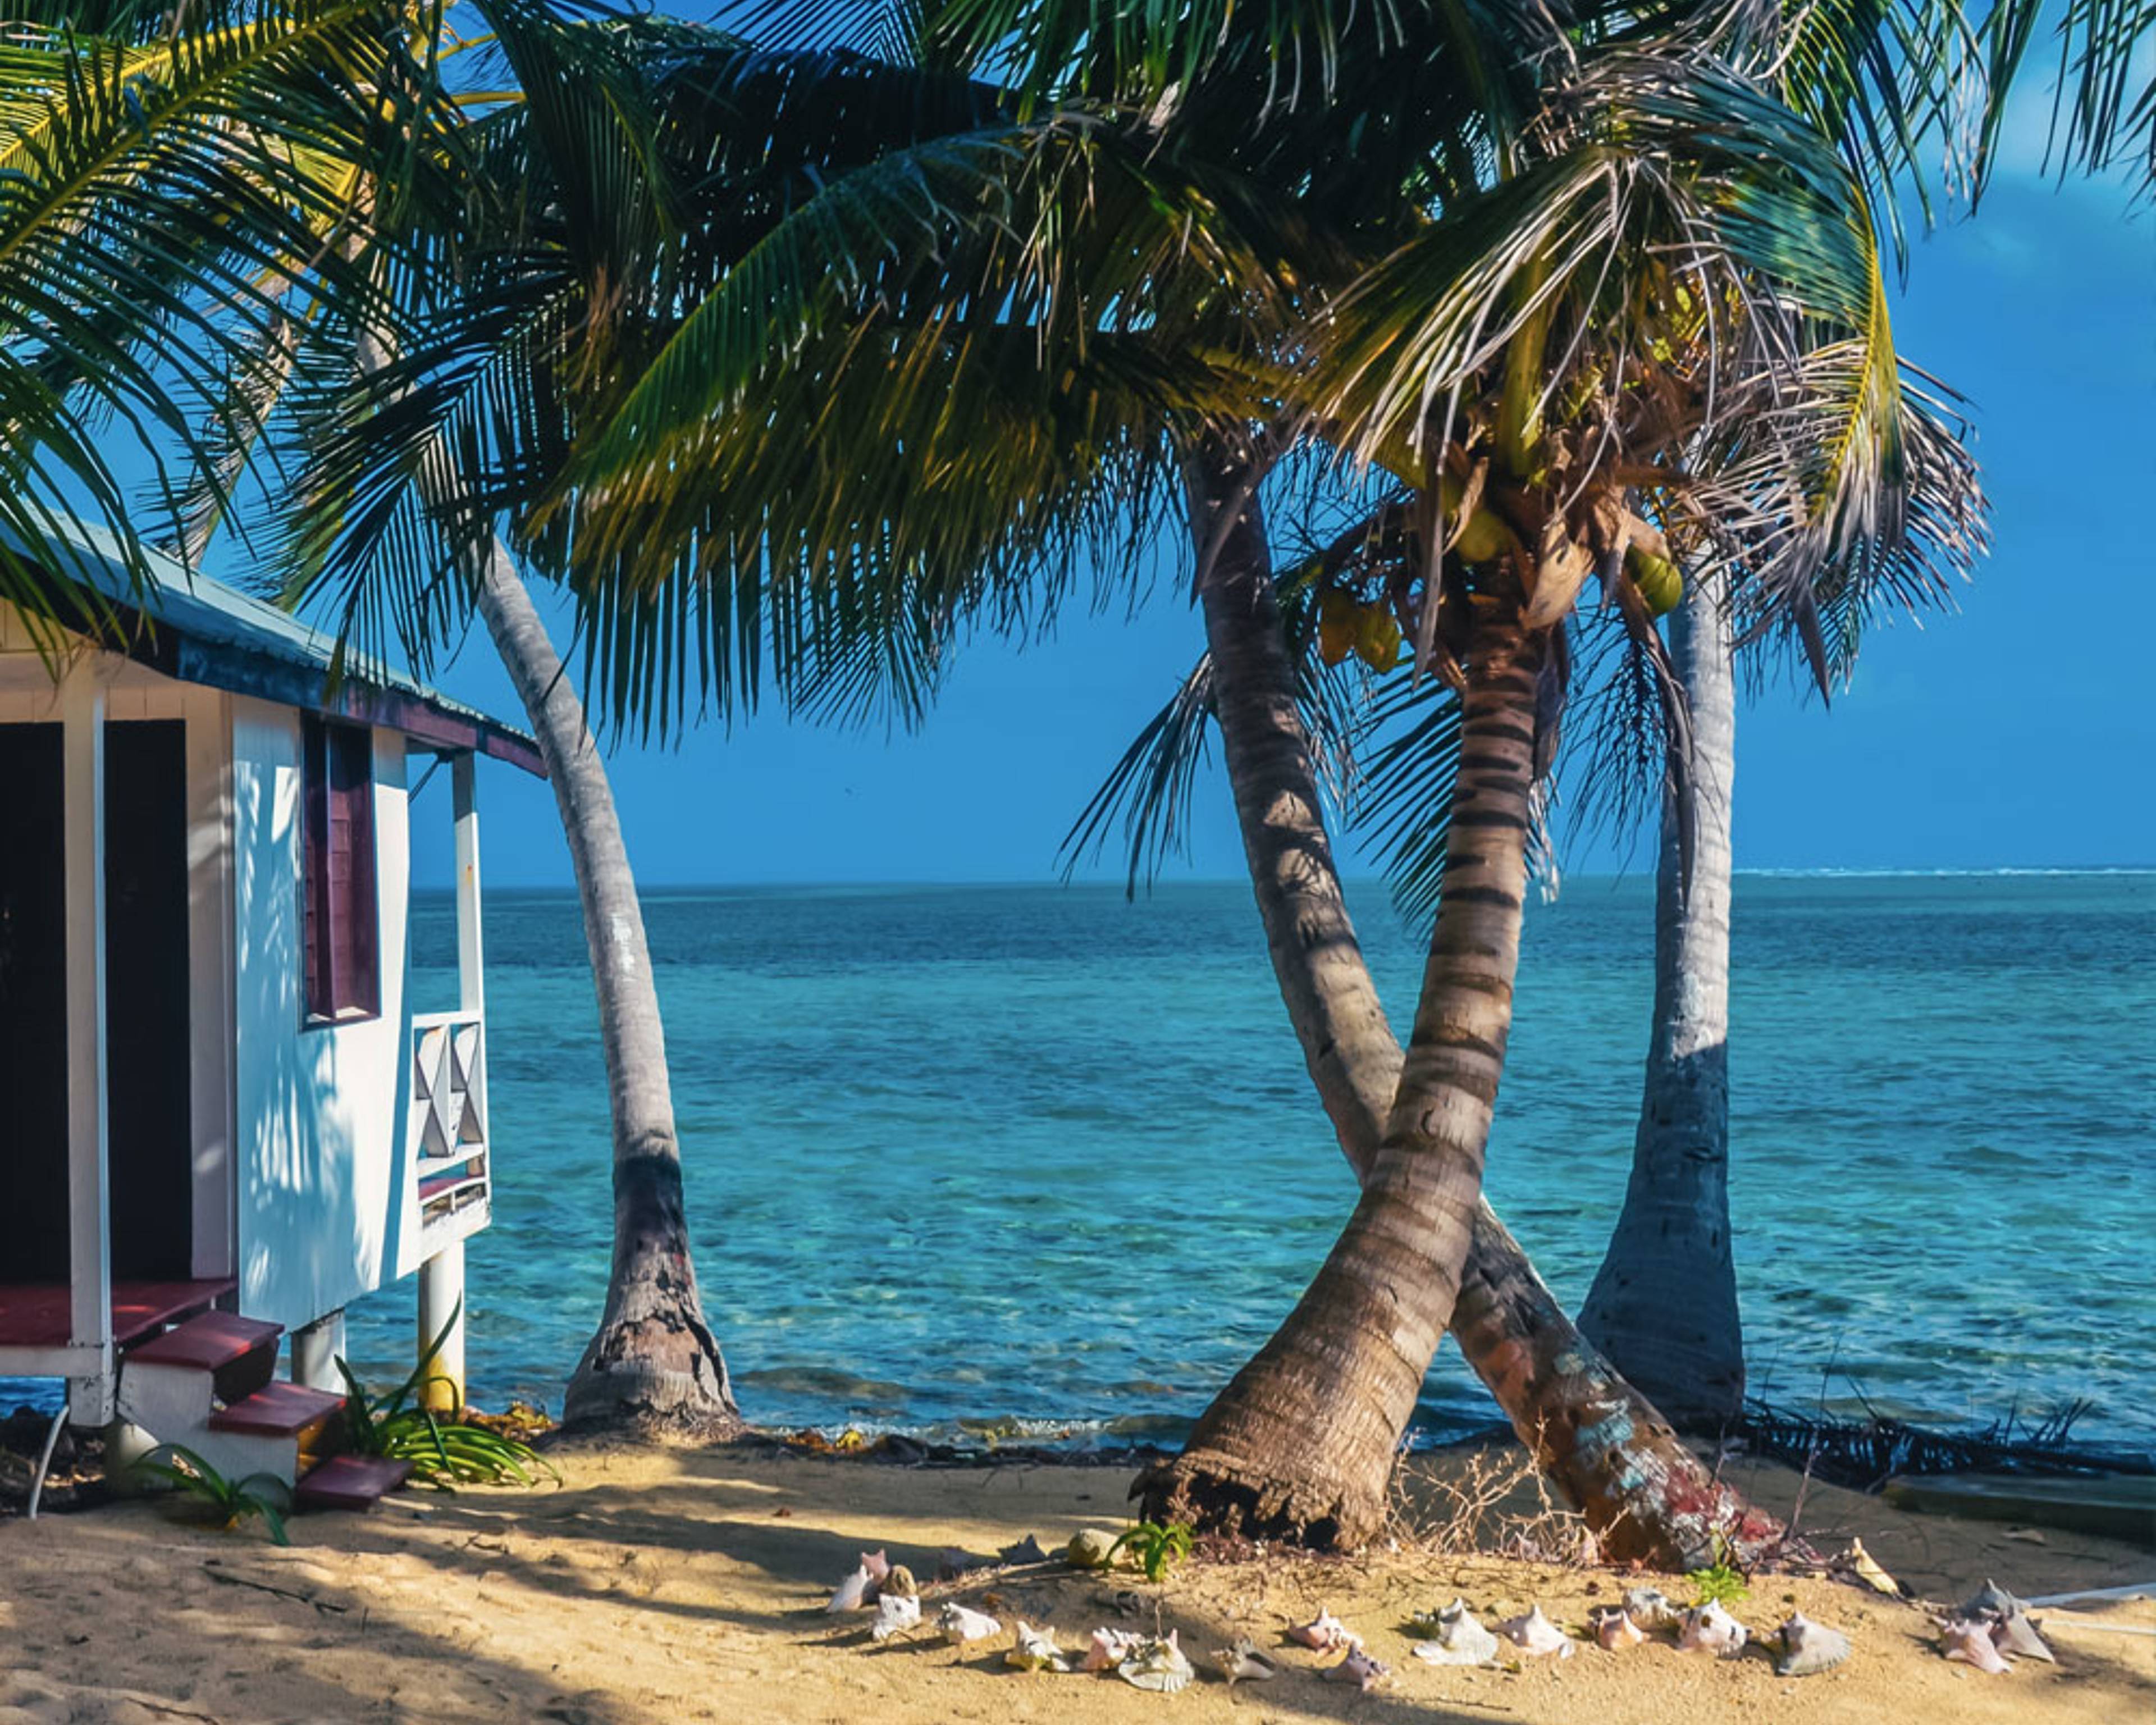 Il tuo viaggio su misura nelle isole del Belize